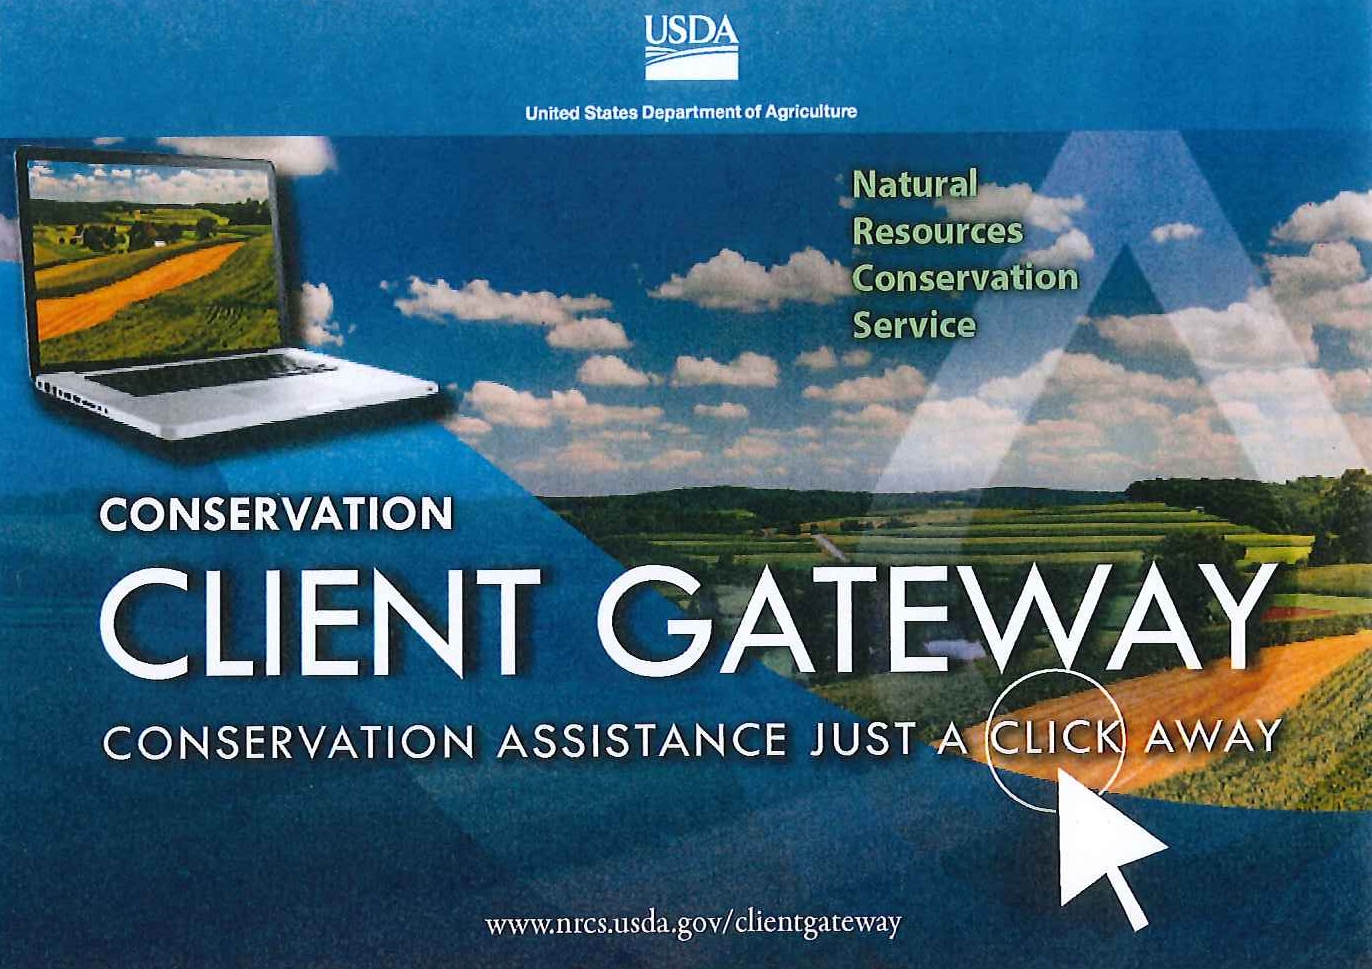 Client Gateway poster